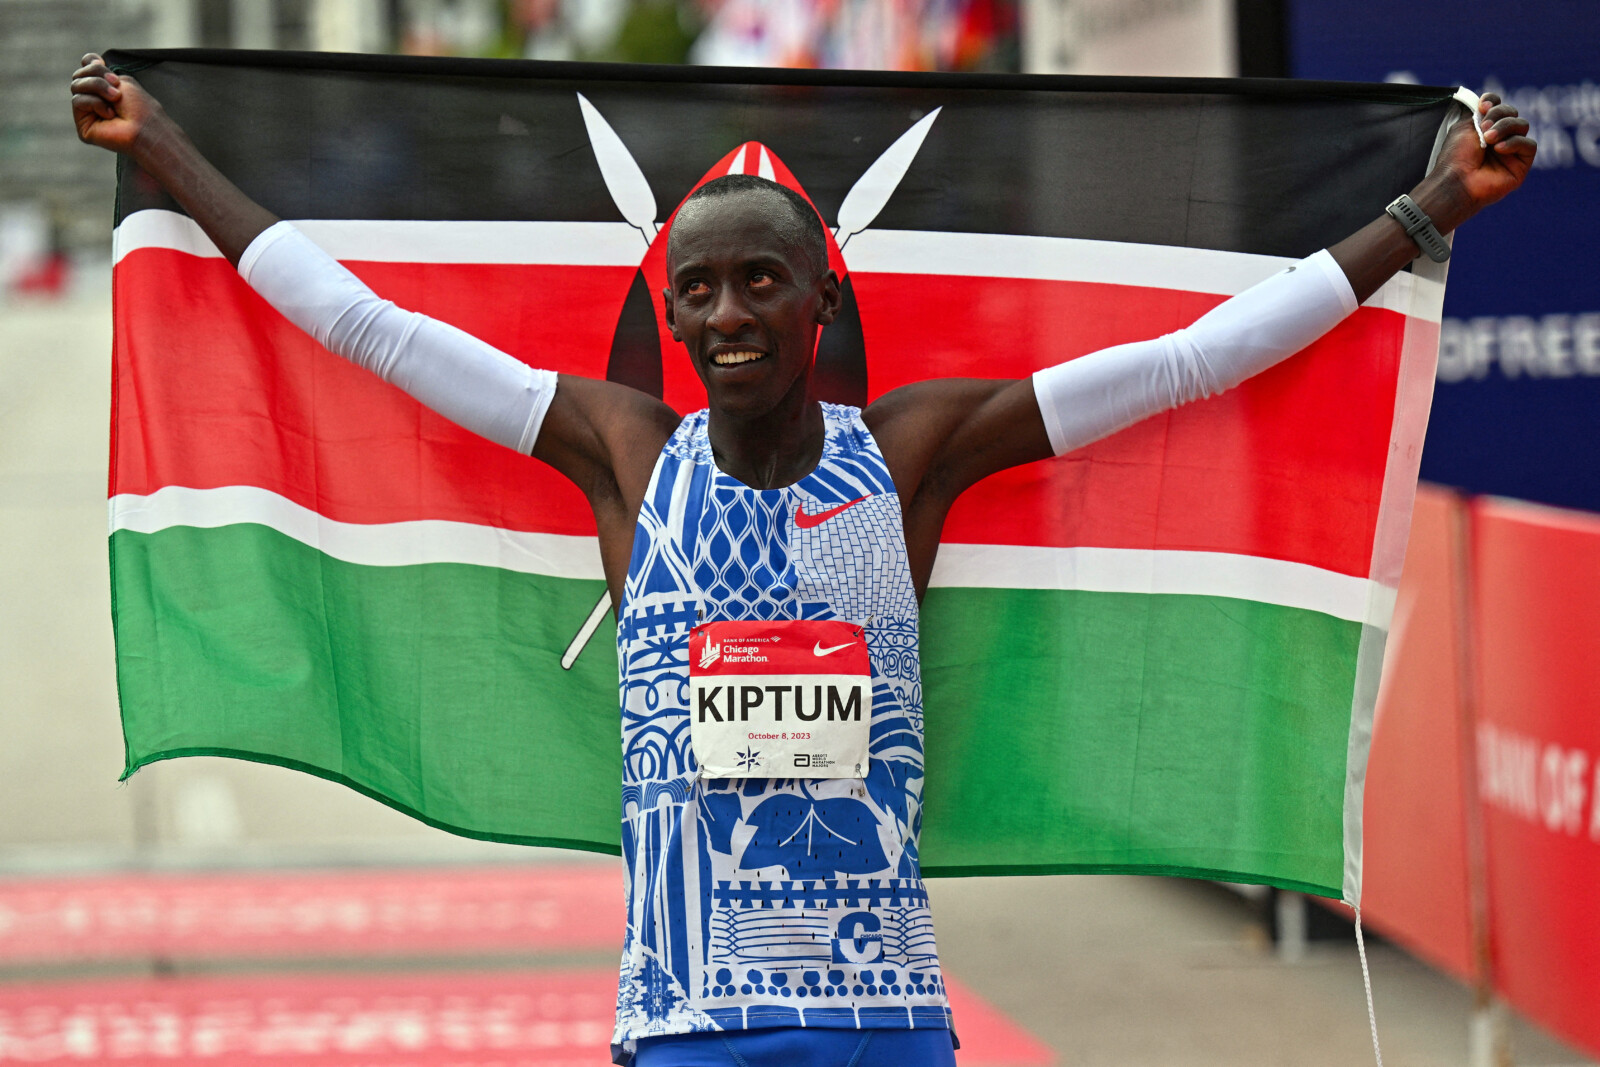 קלווין קיפטום מקניה מנצח וקבע את שיא העולם במרתון שיקגו 2023 (צילום: USA TODAY Sports via Reuters)